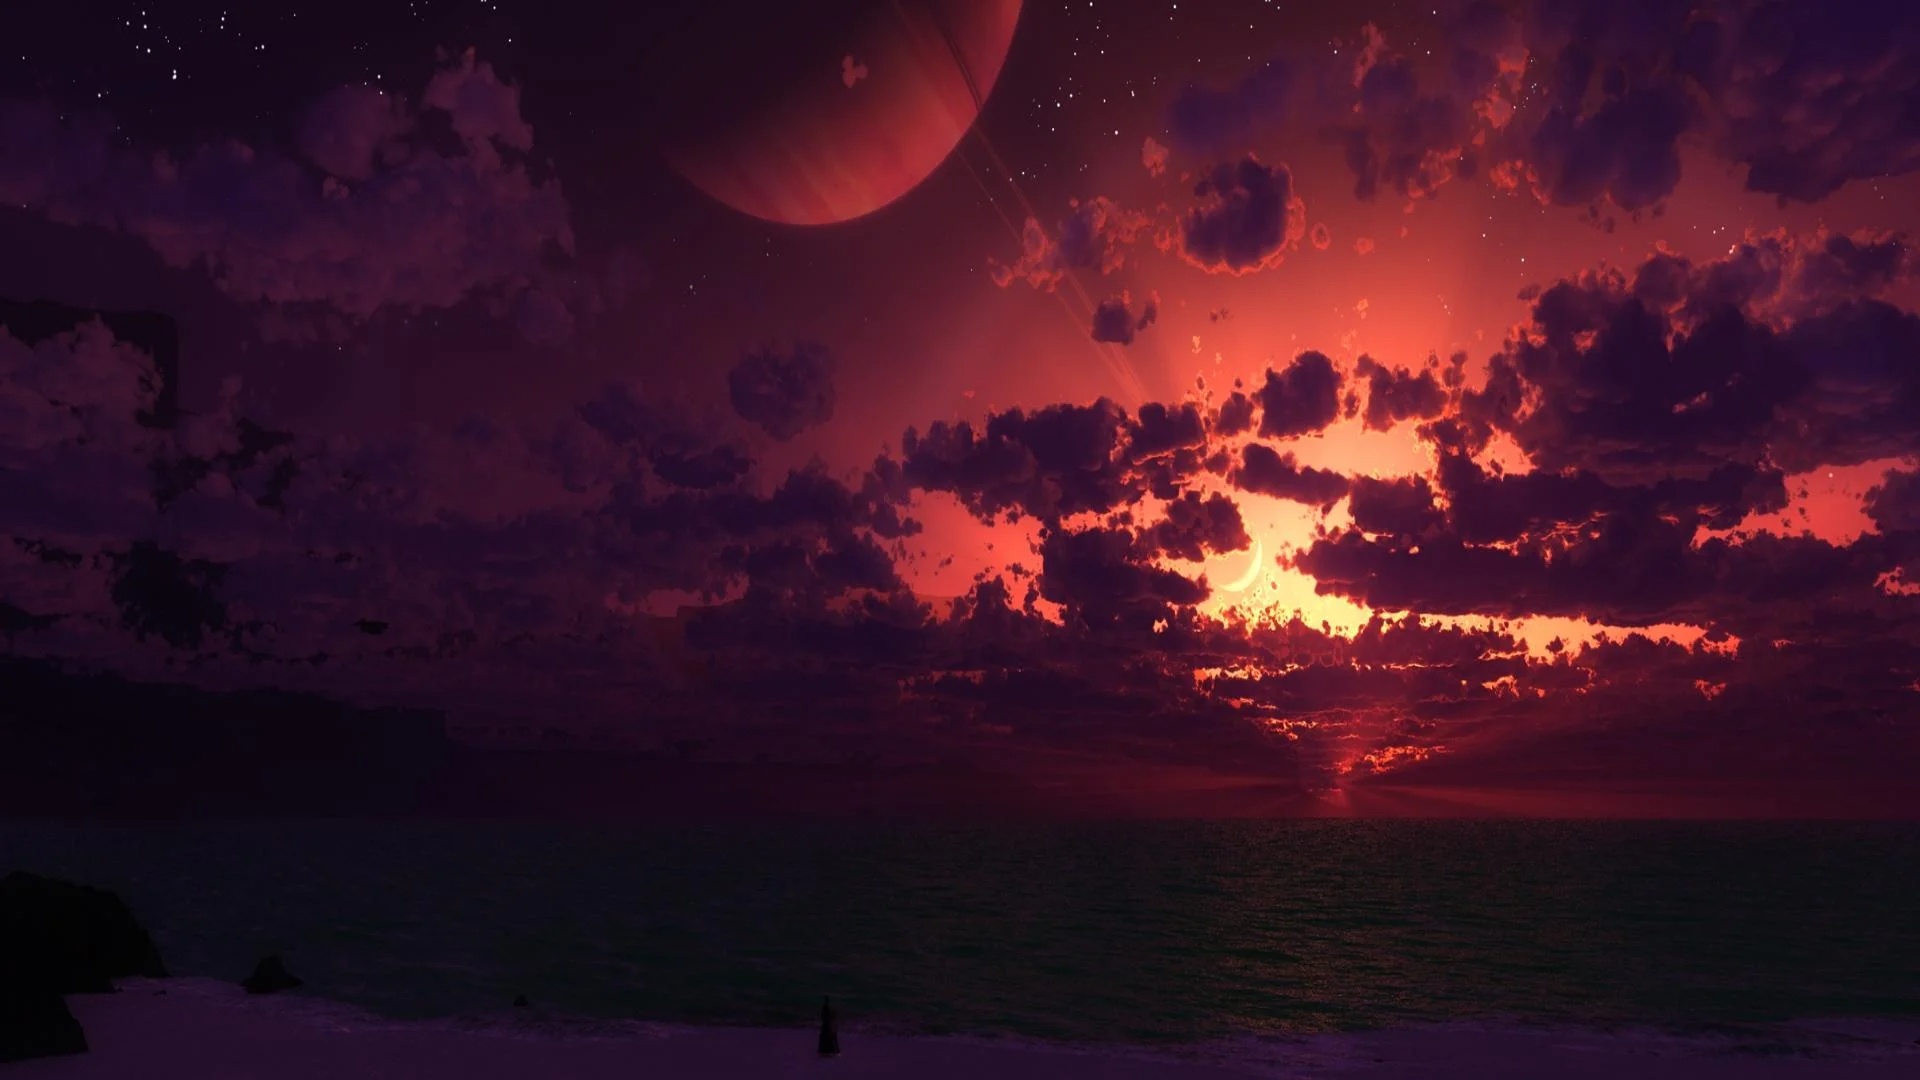 Ocean Sunset Desktop Wallpaper